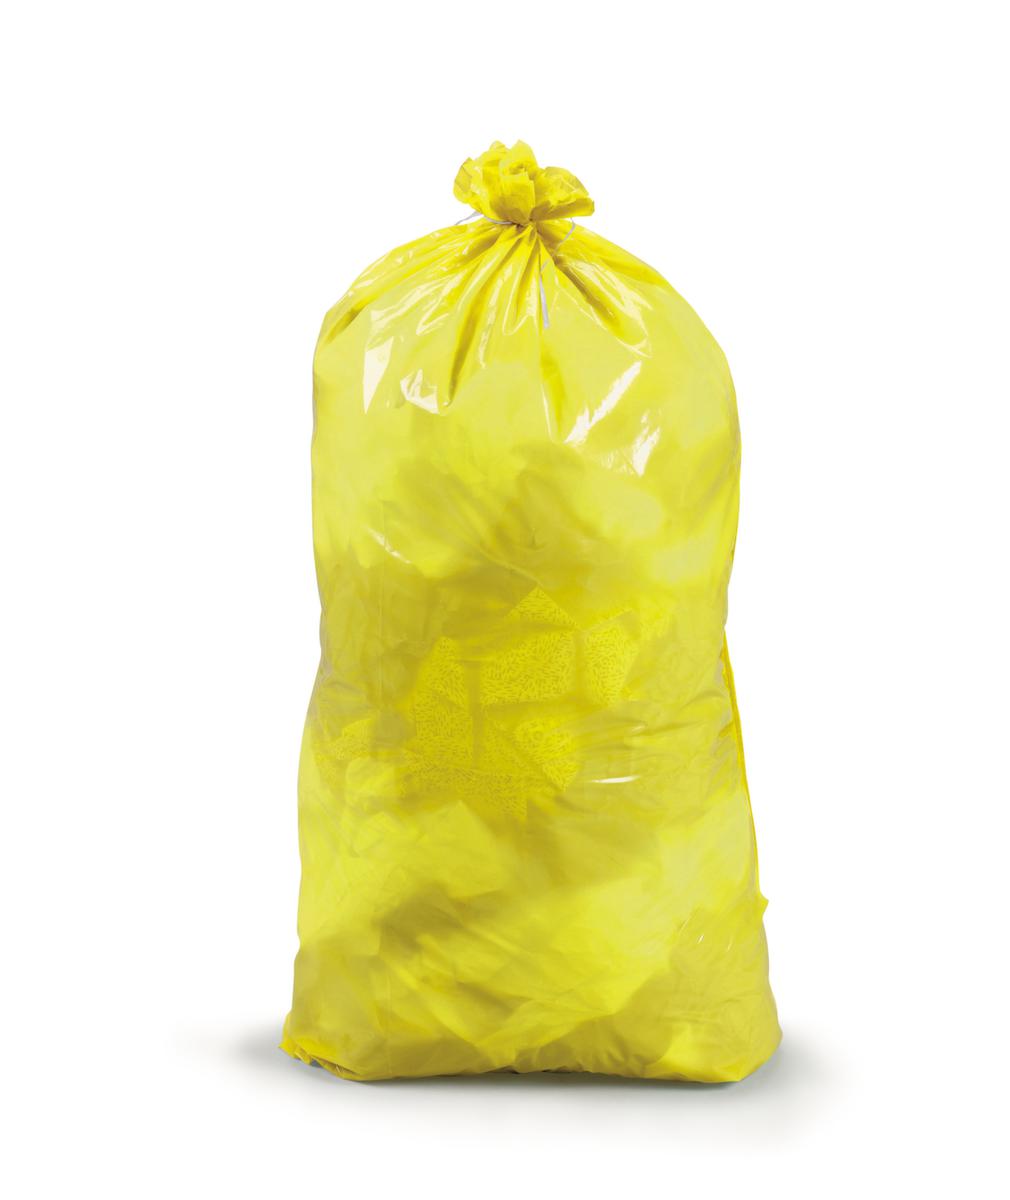 Raja Reißfester Müllsack mit Verschlussband, 60 l, gelb Standard 1 ZOOM